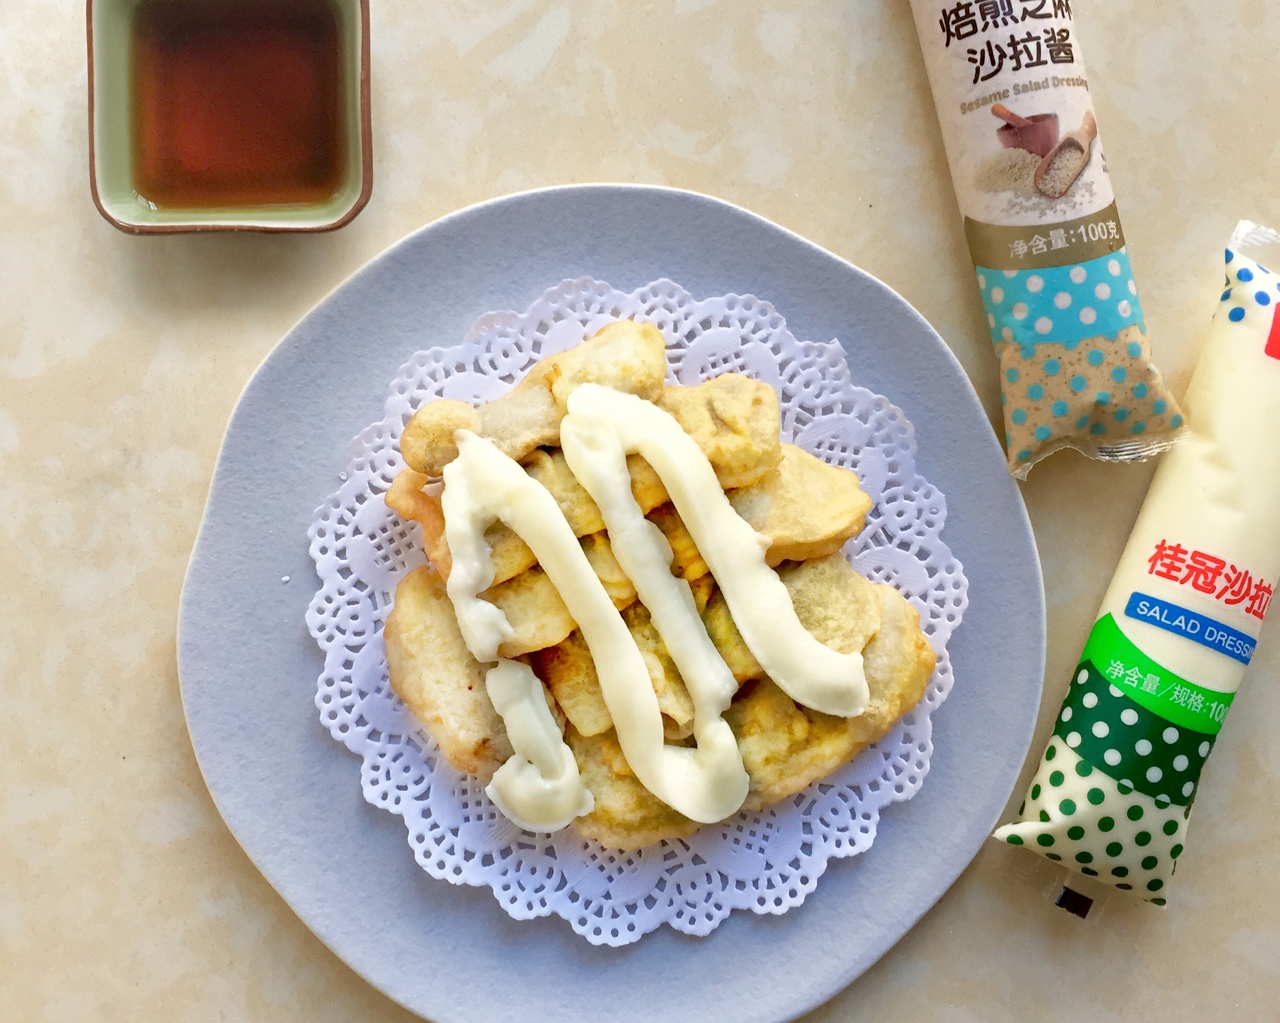 【桂冠沙拉酱食谱——香蕉天妇罗】的做法